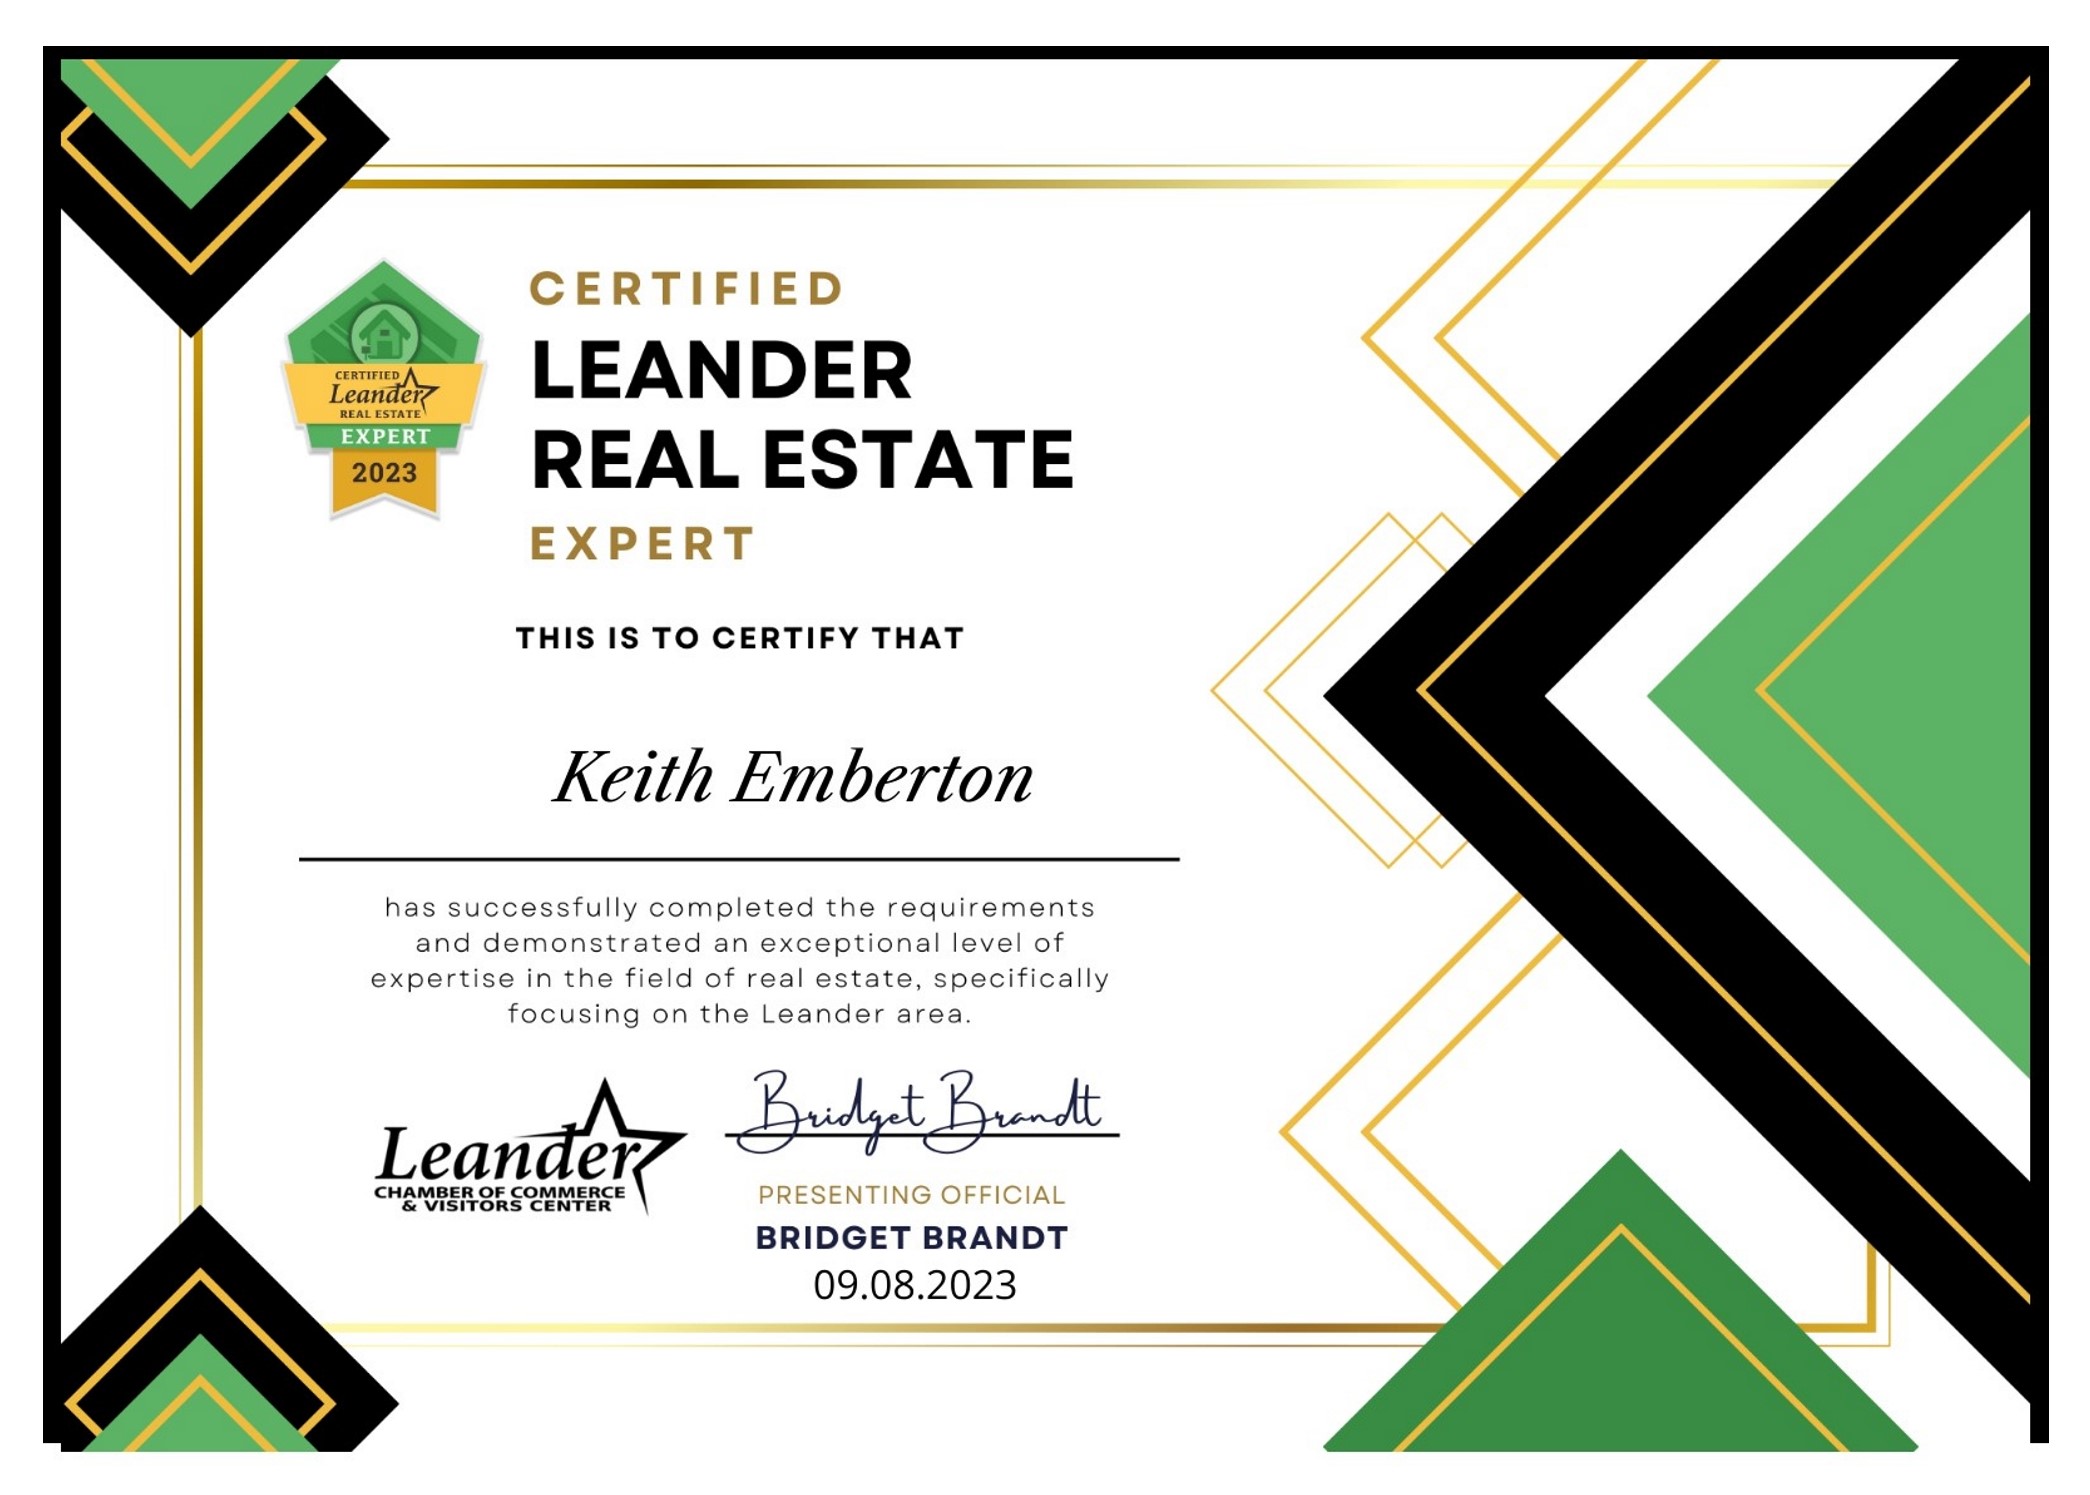 Leander Real Estate Expert 15Sep23 jpeg